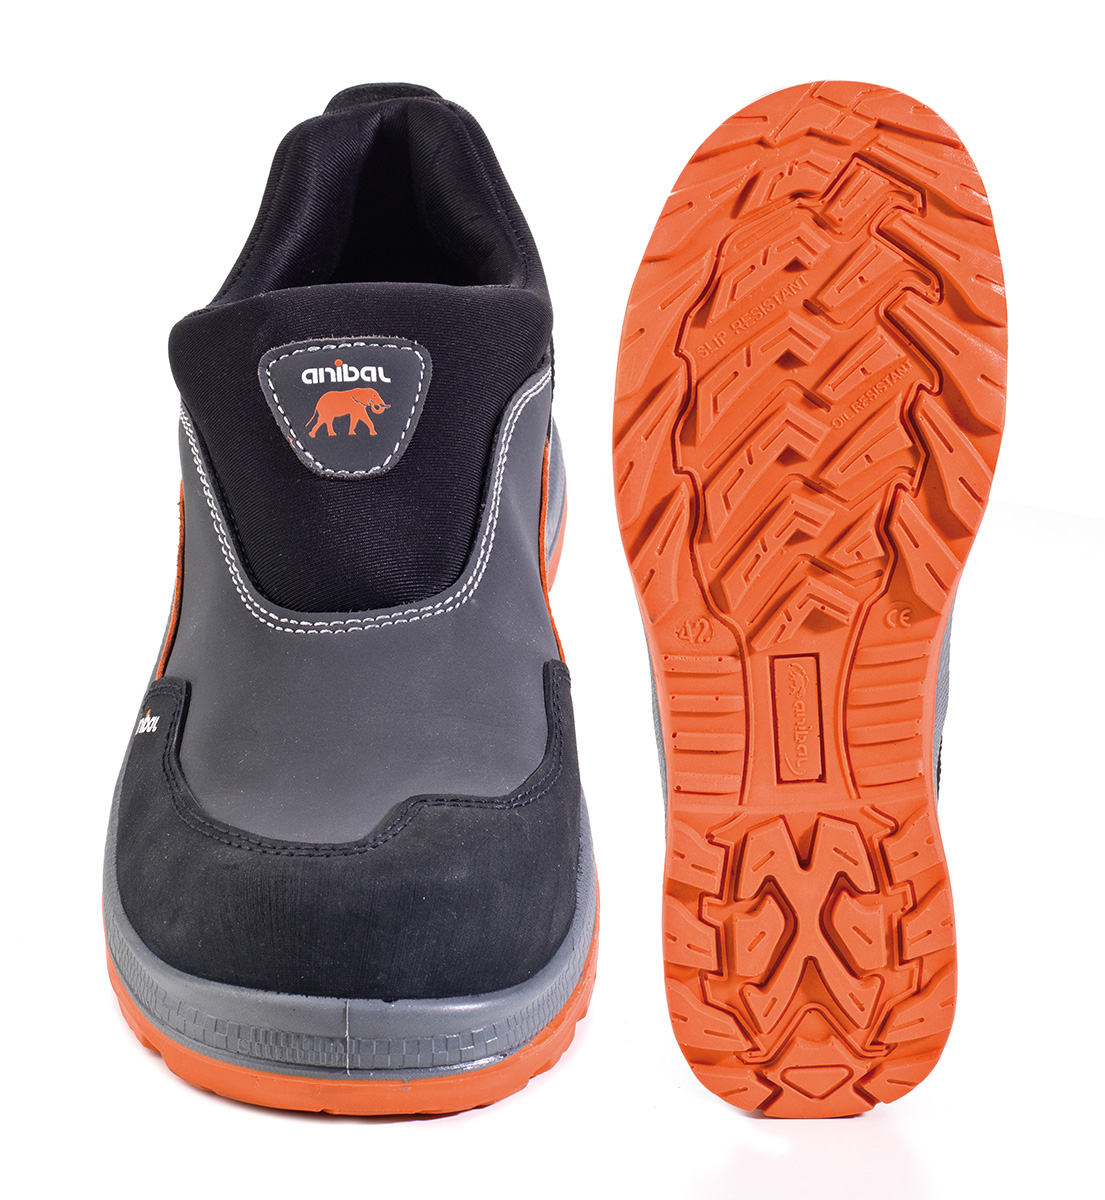 1688-ZA Calzado de Seguridad Sporty Zapato mod. “ATENAS”. Zapato tipo mocasín piel microfibra afelpada en S3. Suela de Poliuretano doble densidad SRC.